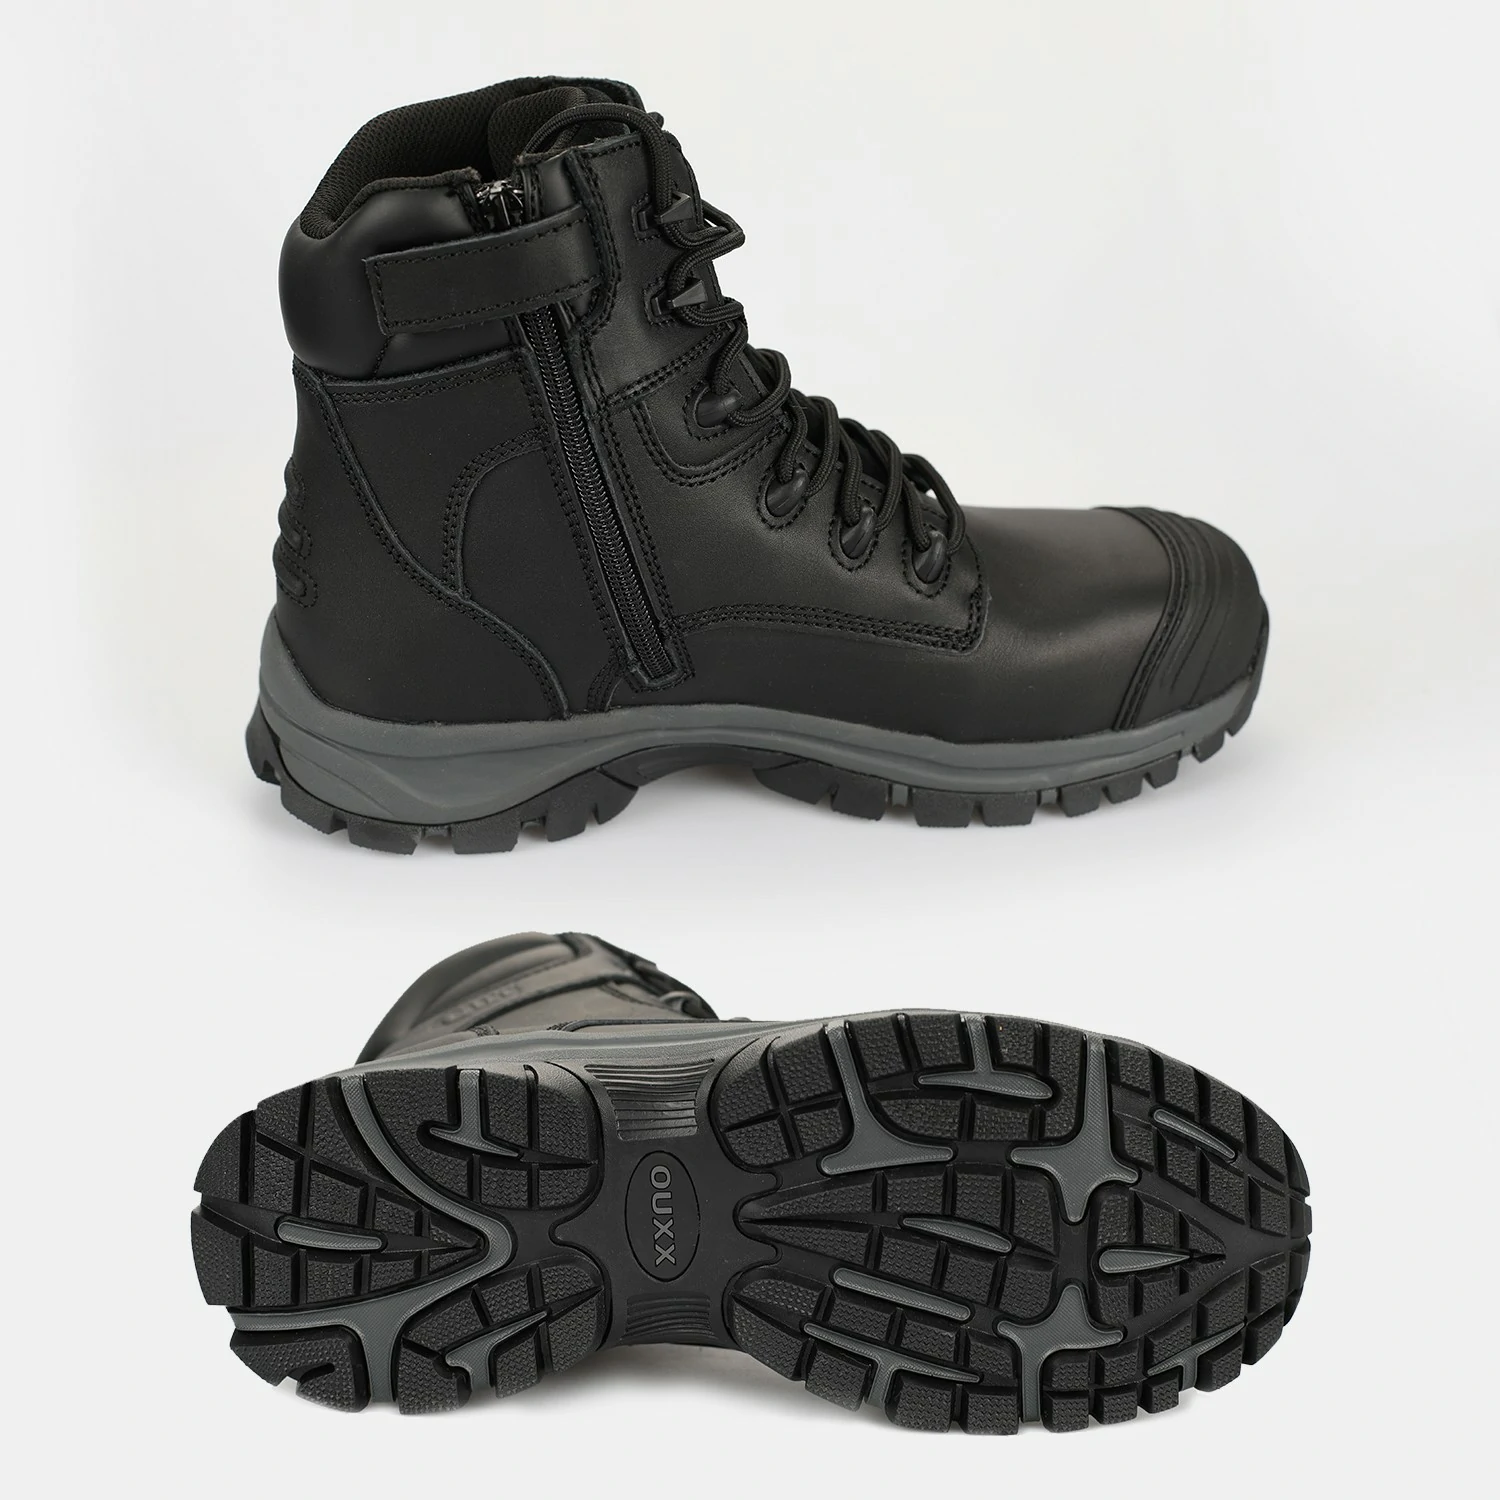 OX2720_www.ouxxsafety.com-3_Workboots_Workshoes_ouxxshoes_ouxxboots_non slip shoes_work boots for men